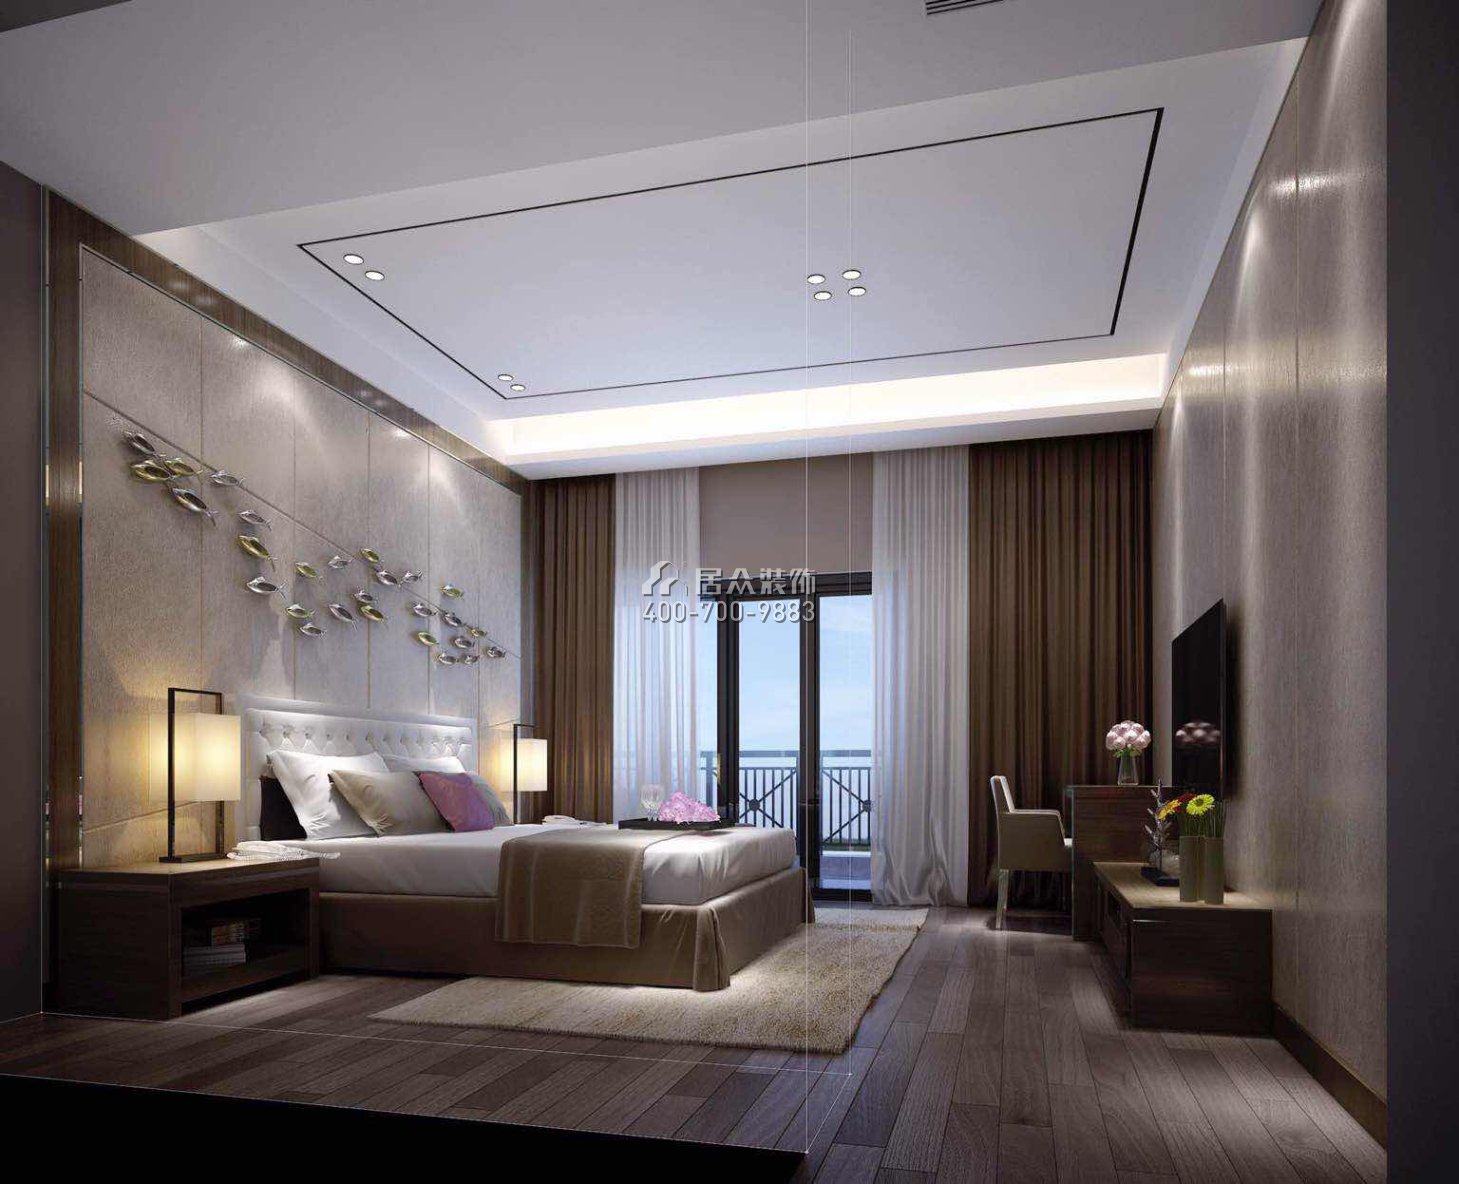 龙城一品580平方米现代简约风格别墅户型卧室装修效果图